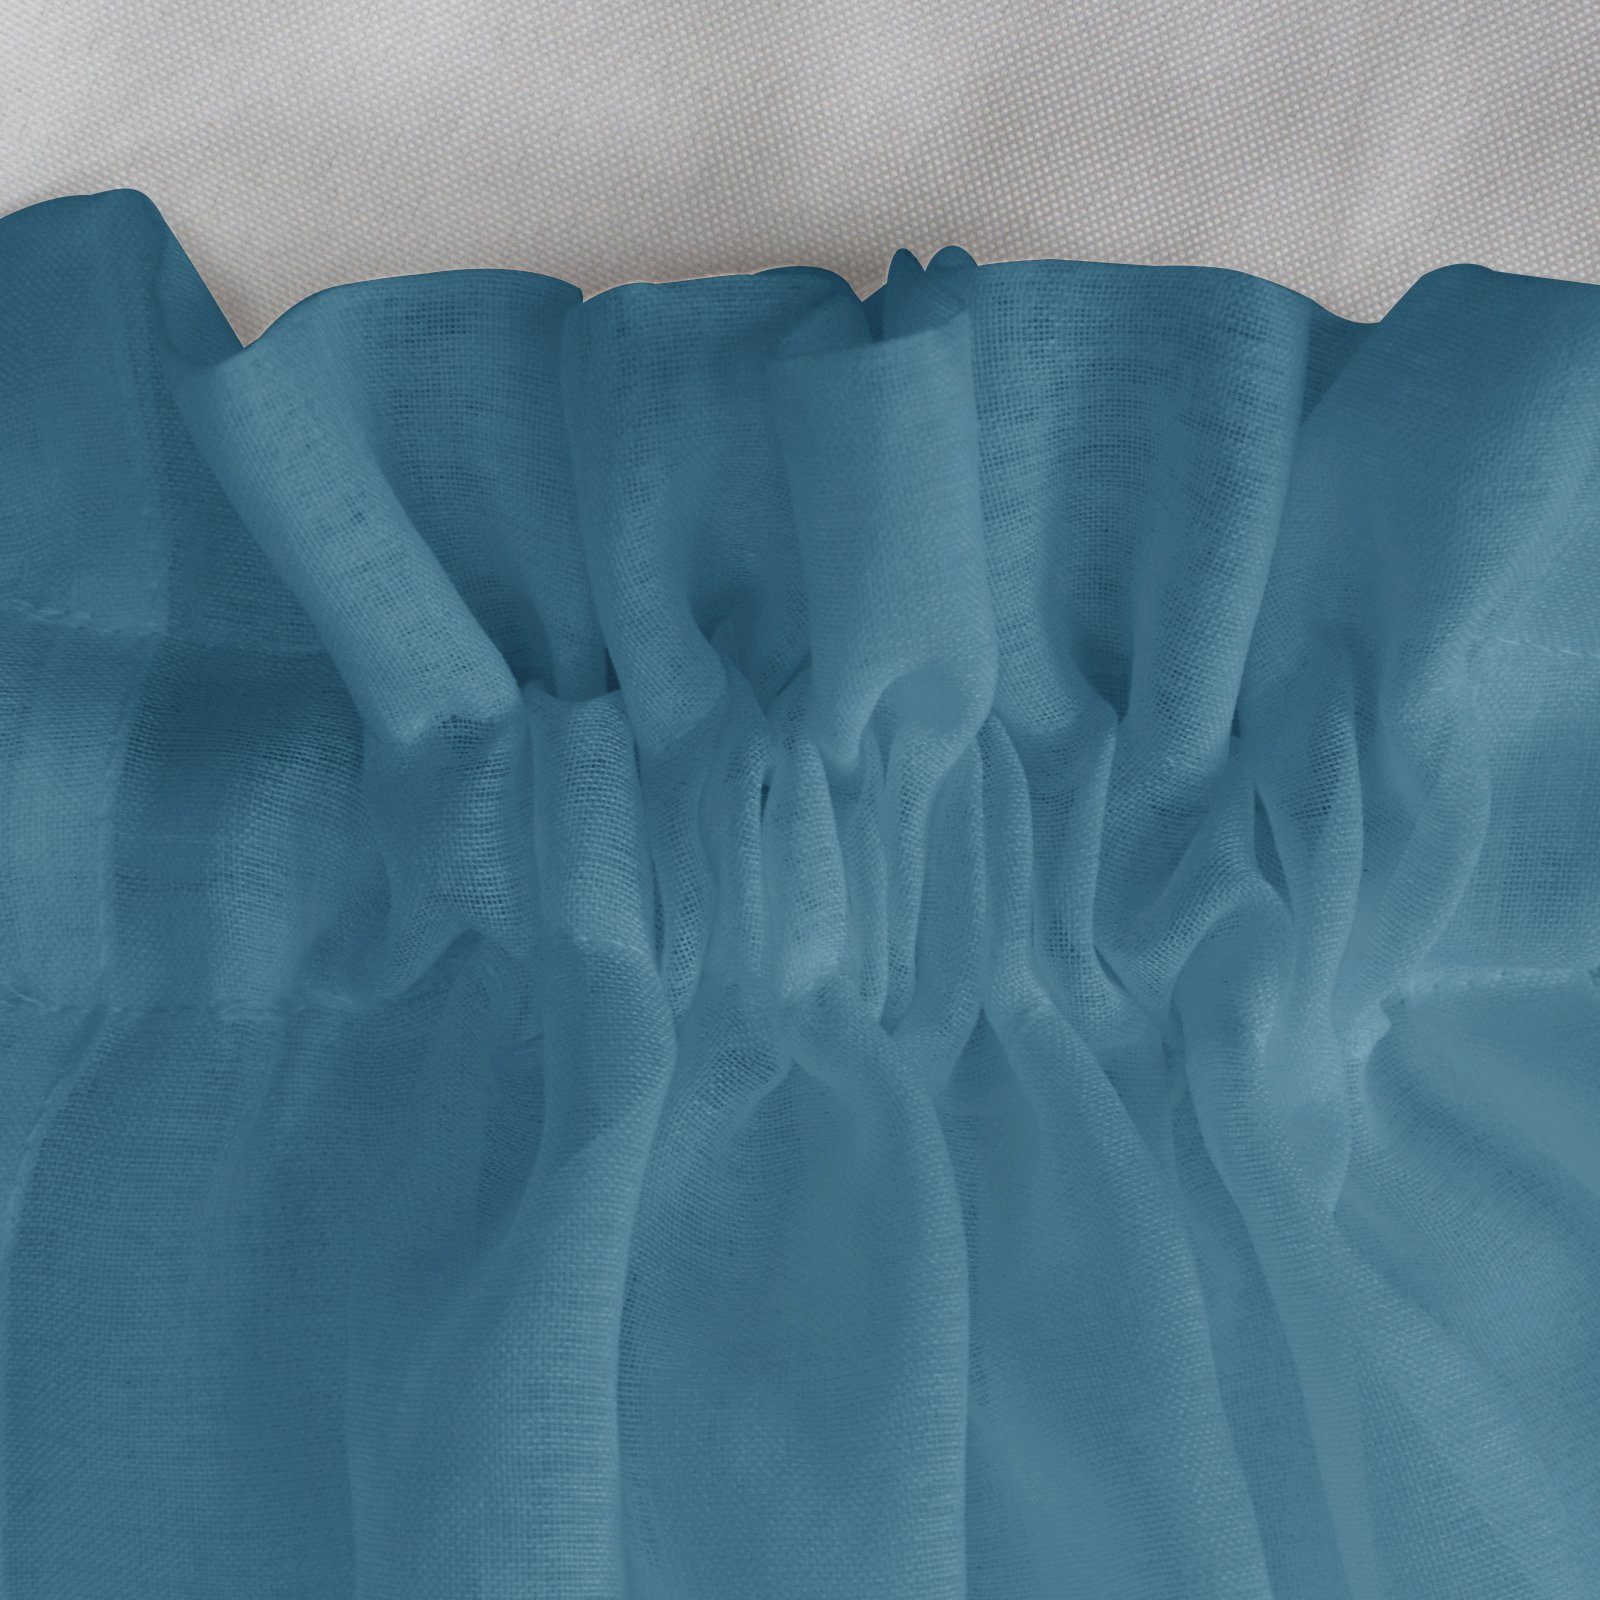 HOMEIDEAS, transparent, Türvorhang, Französische Stangendurchzug Blau (1 St),